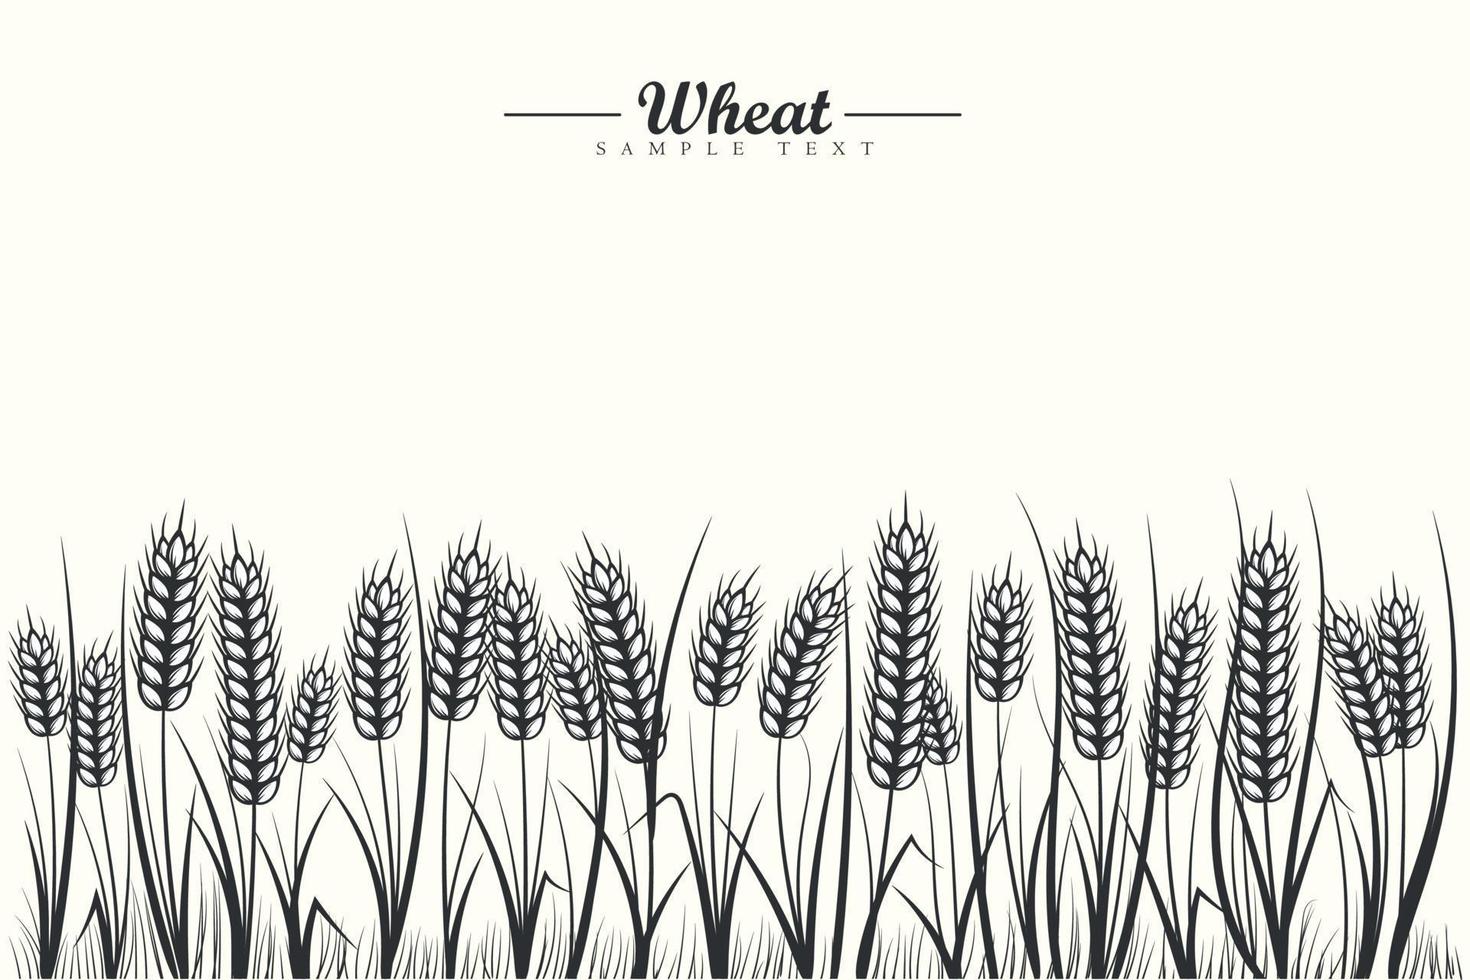 fundo de campo de cereais de trigo preto e branco com espigas de trigo e folha de trigo em fundo branco vetor